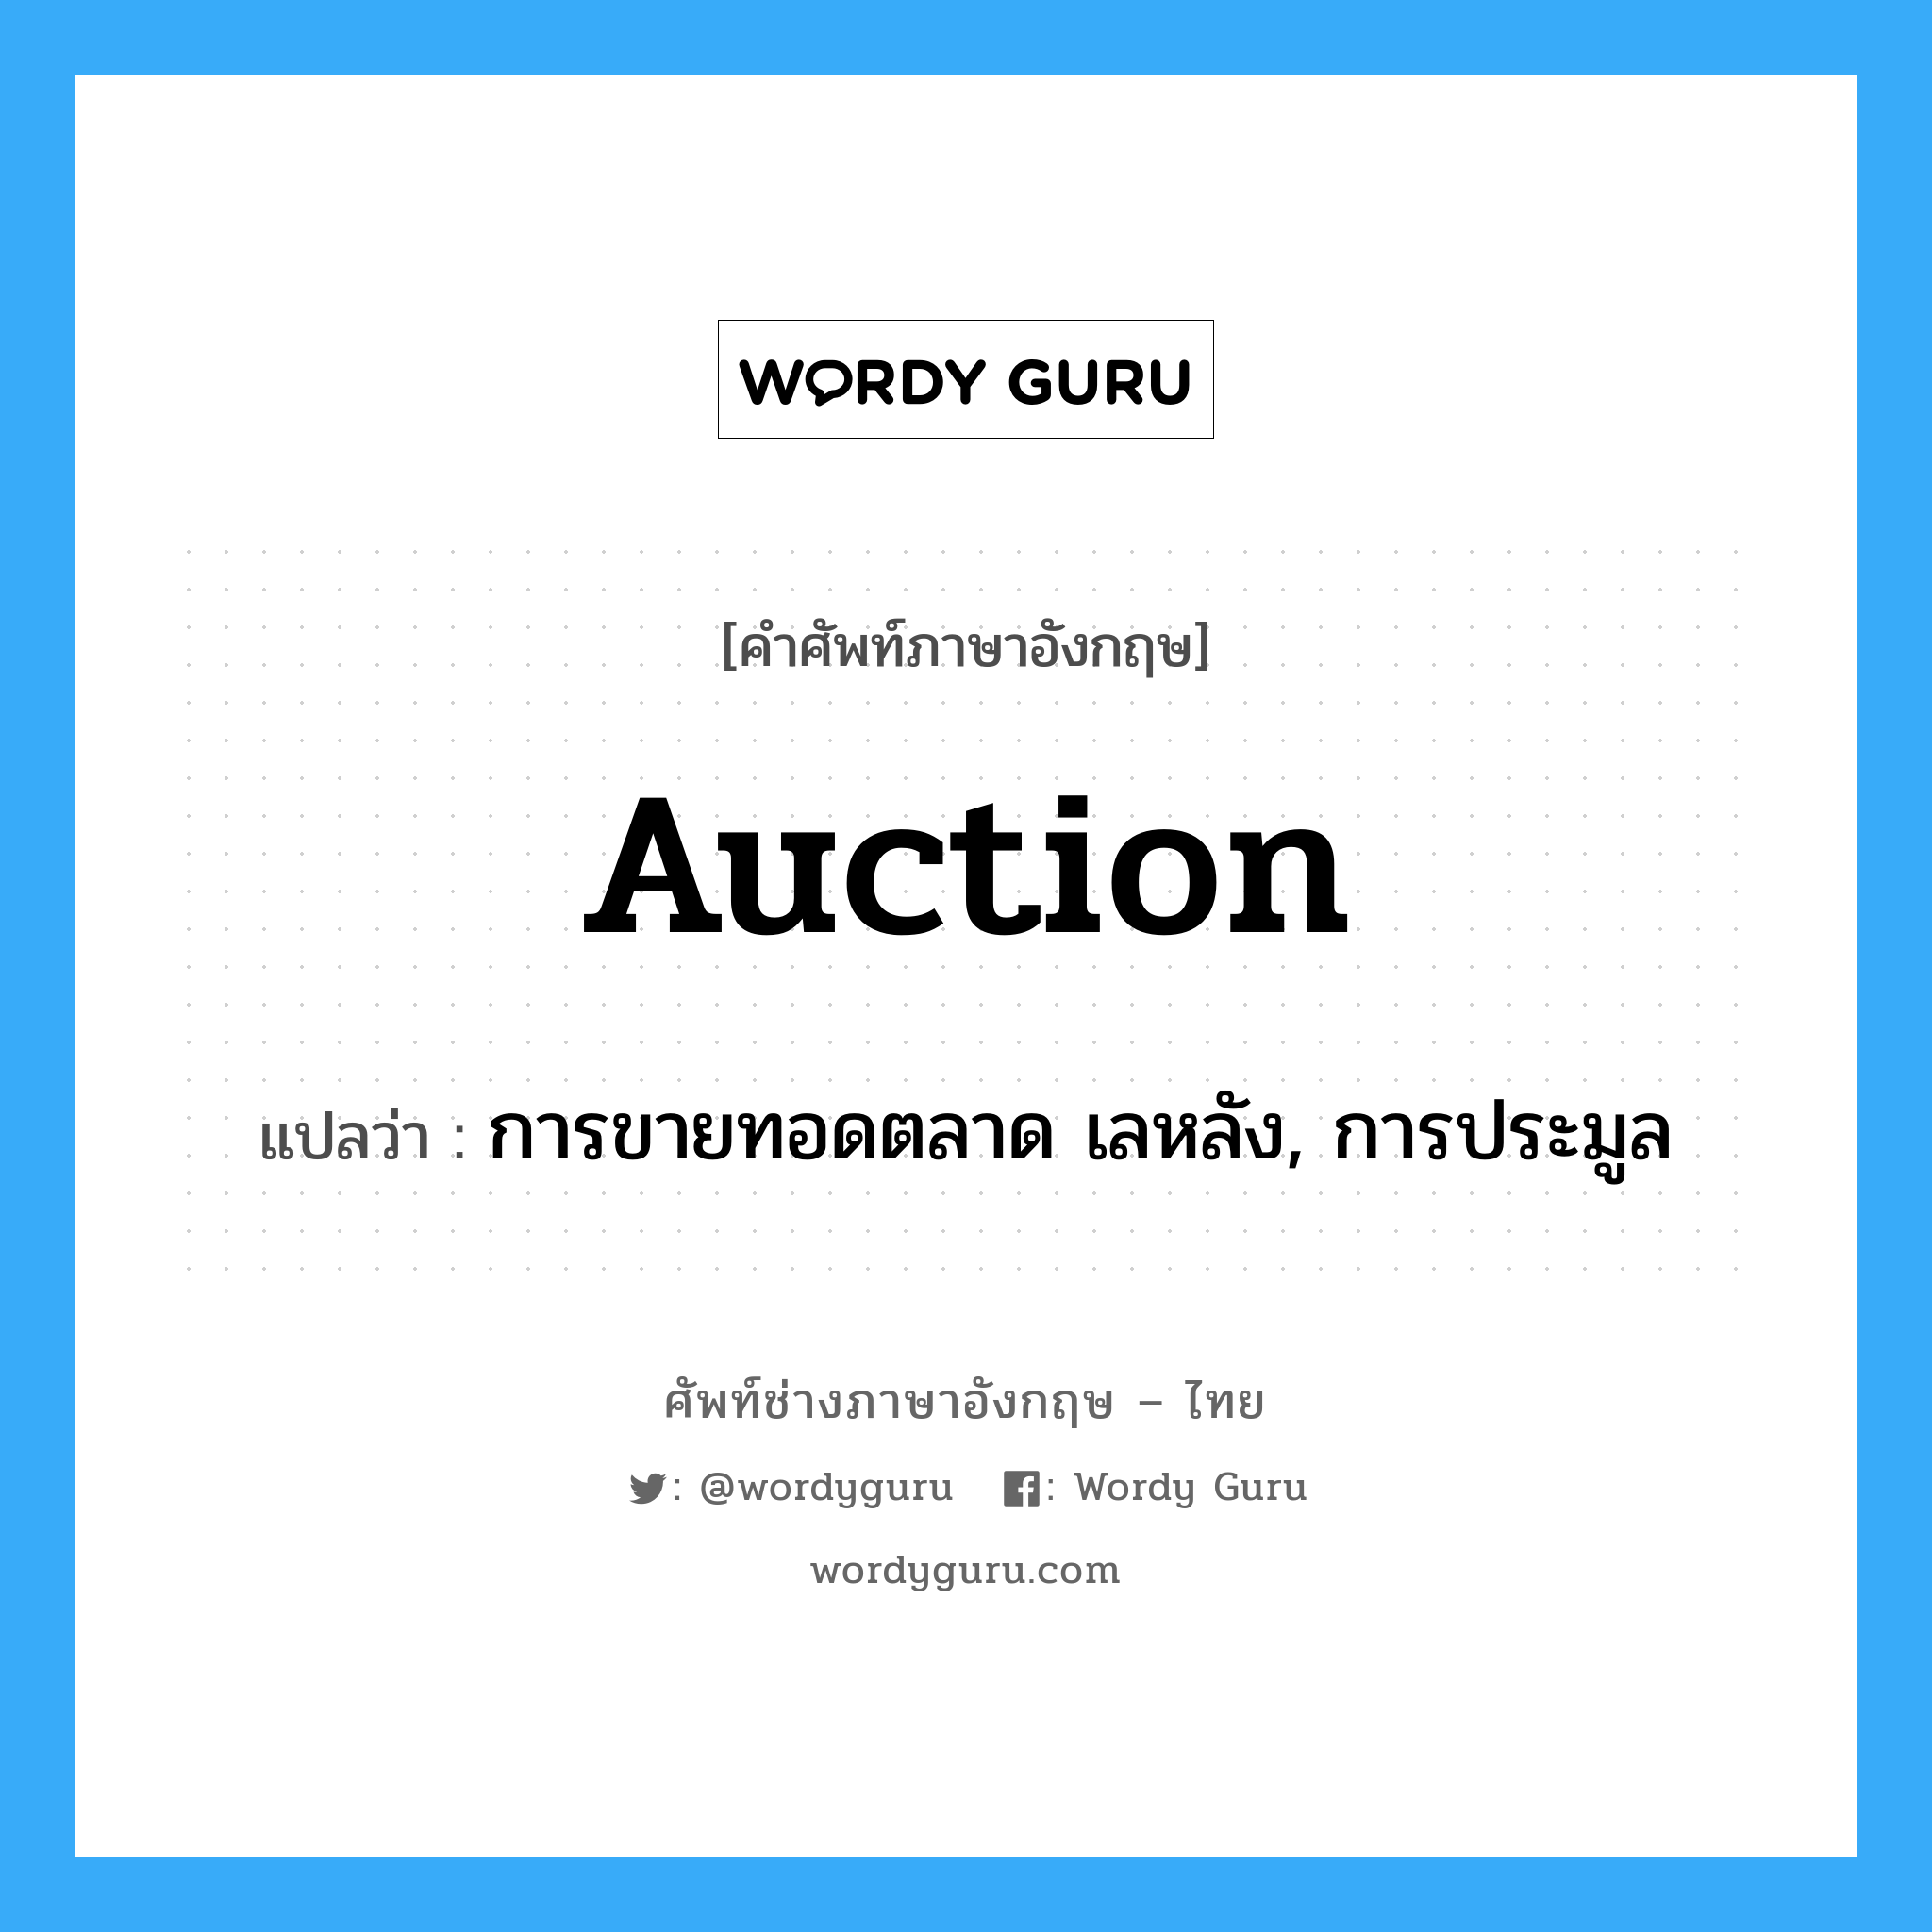 การขายทอดตลาด เลหลัง, การประมูล ภาษาอังกฤษ?, คำศัพท์ช่างภาษาอังกฤษ - ไทย การขายทอดตลาด เลหลัง, การประมูล คำศัพท์ภาษาอังกฤษ การขายทอดตลาด เลหลัง, การประมูล แปลว่า auction